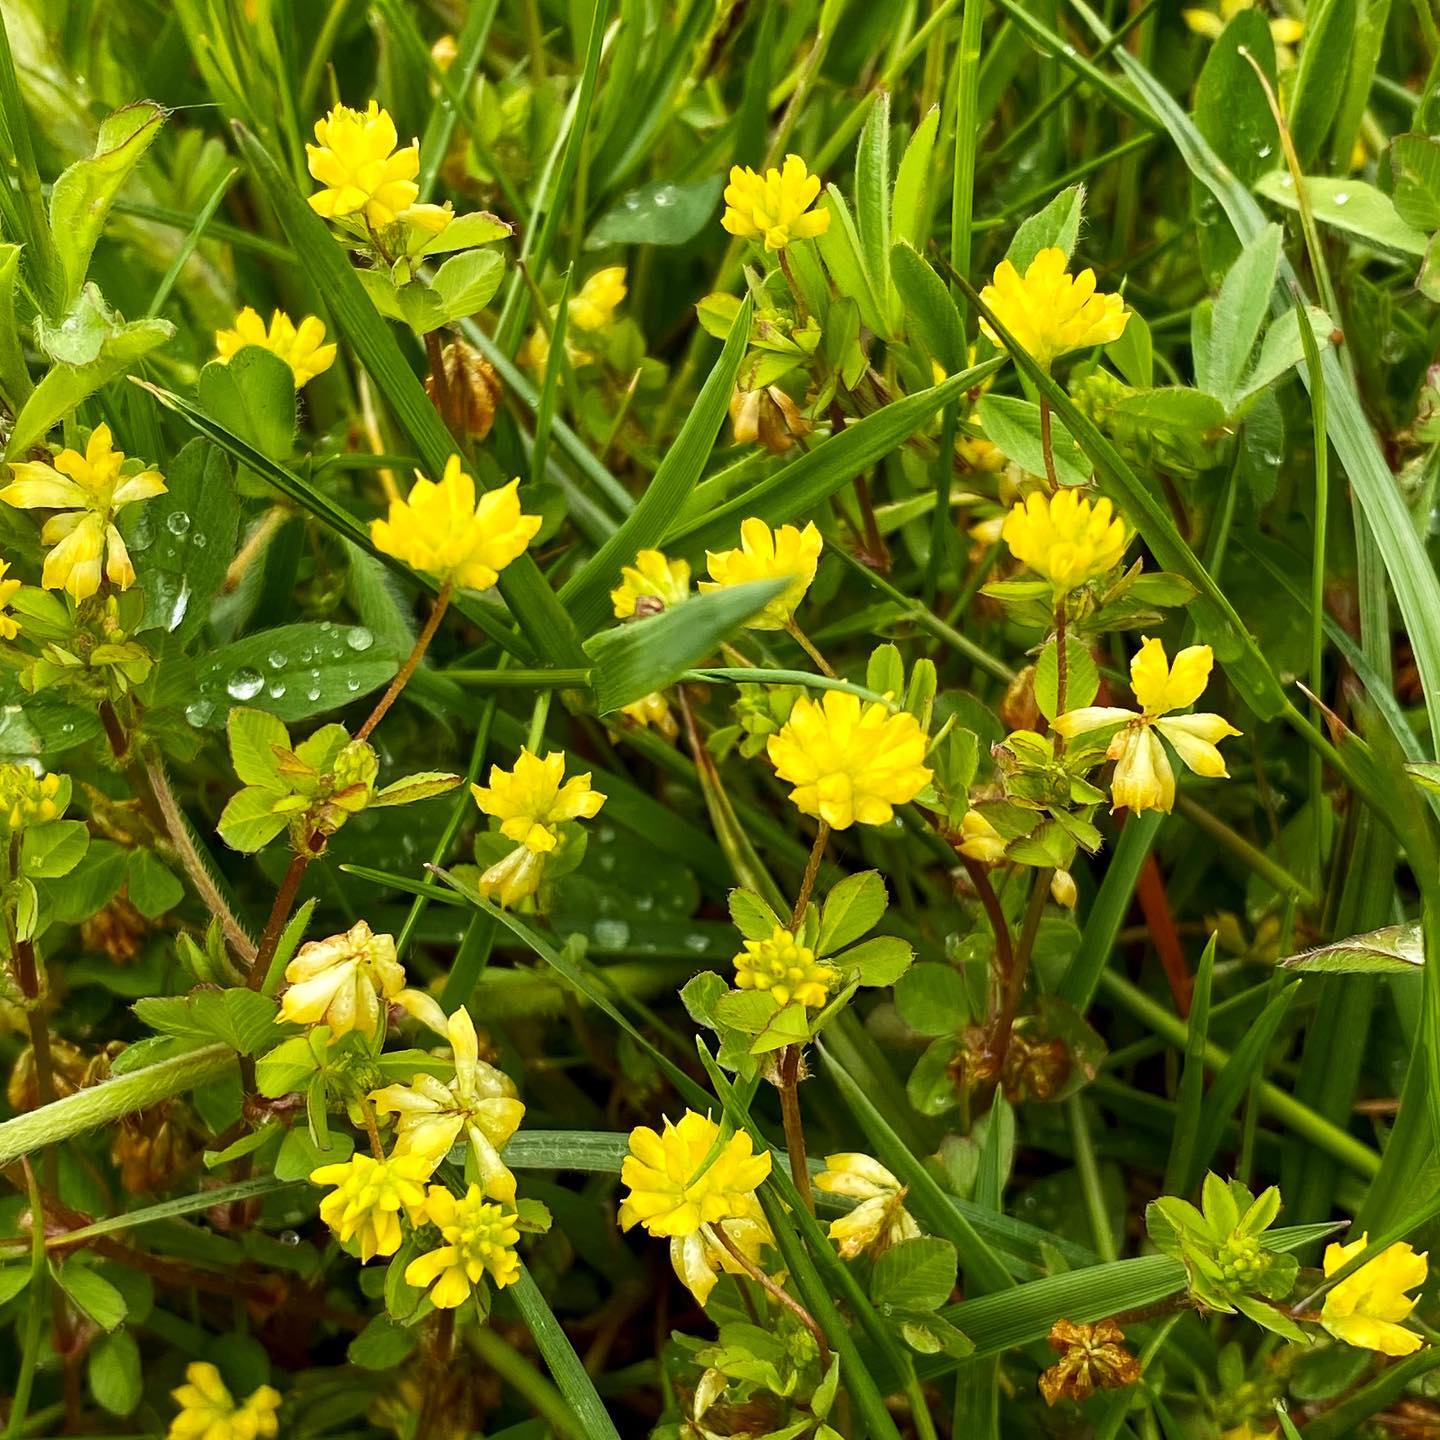 Trifolium Micranthum (Small-flowered Clover)